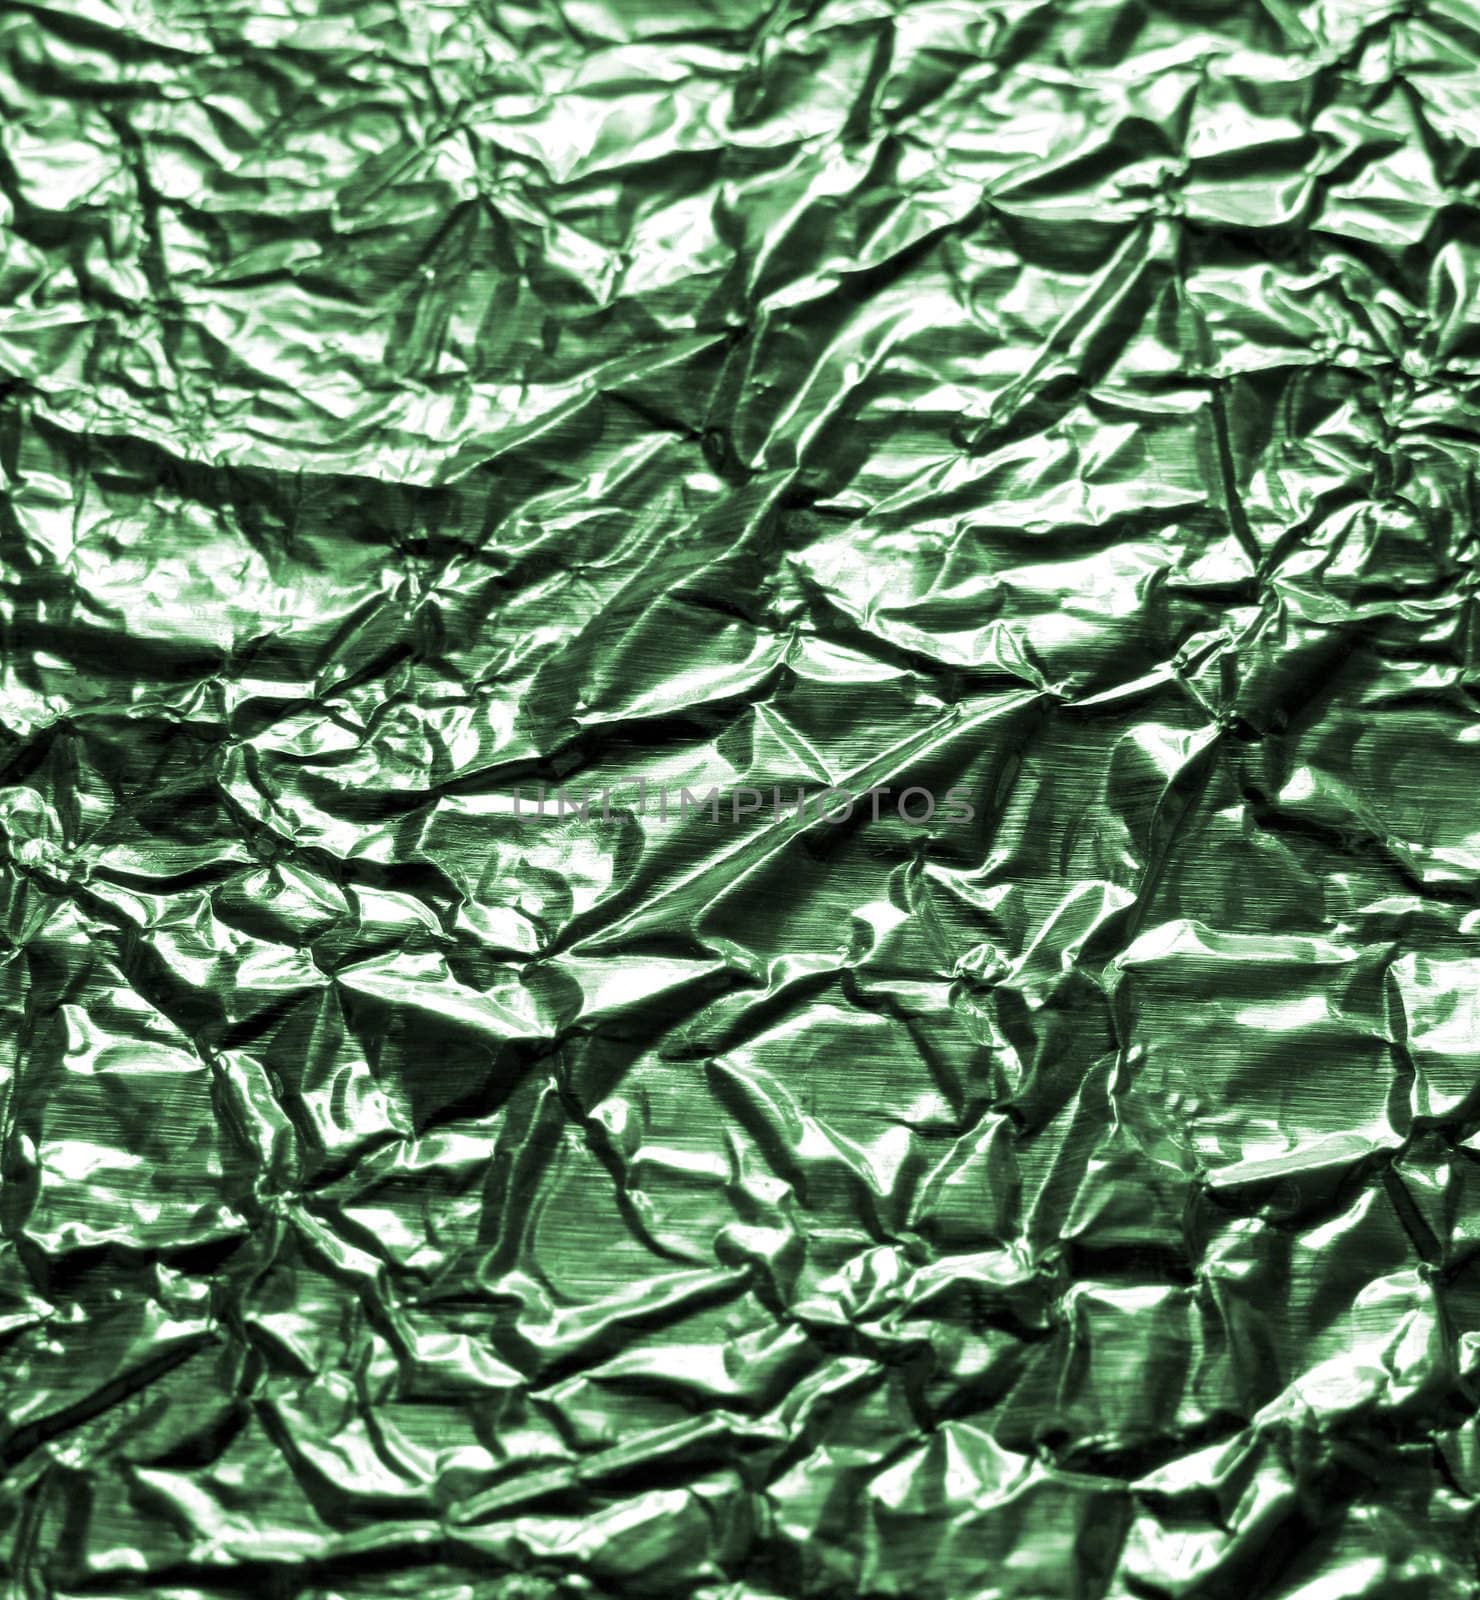 Aluminum foil tinted in dark green